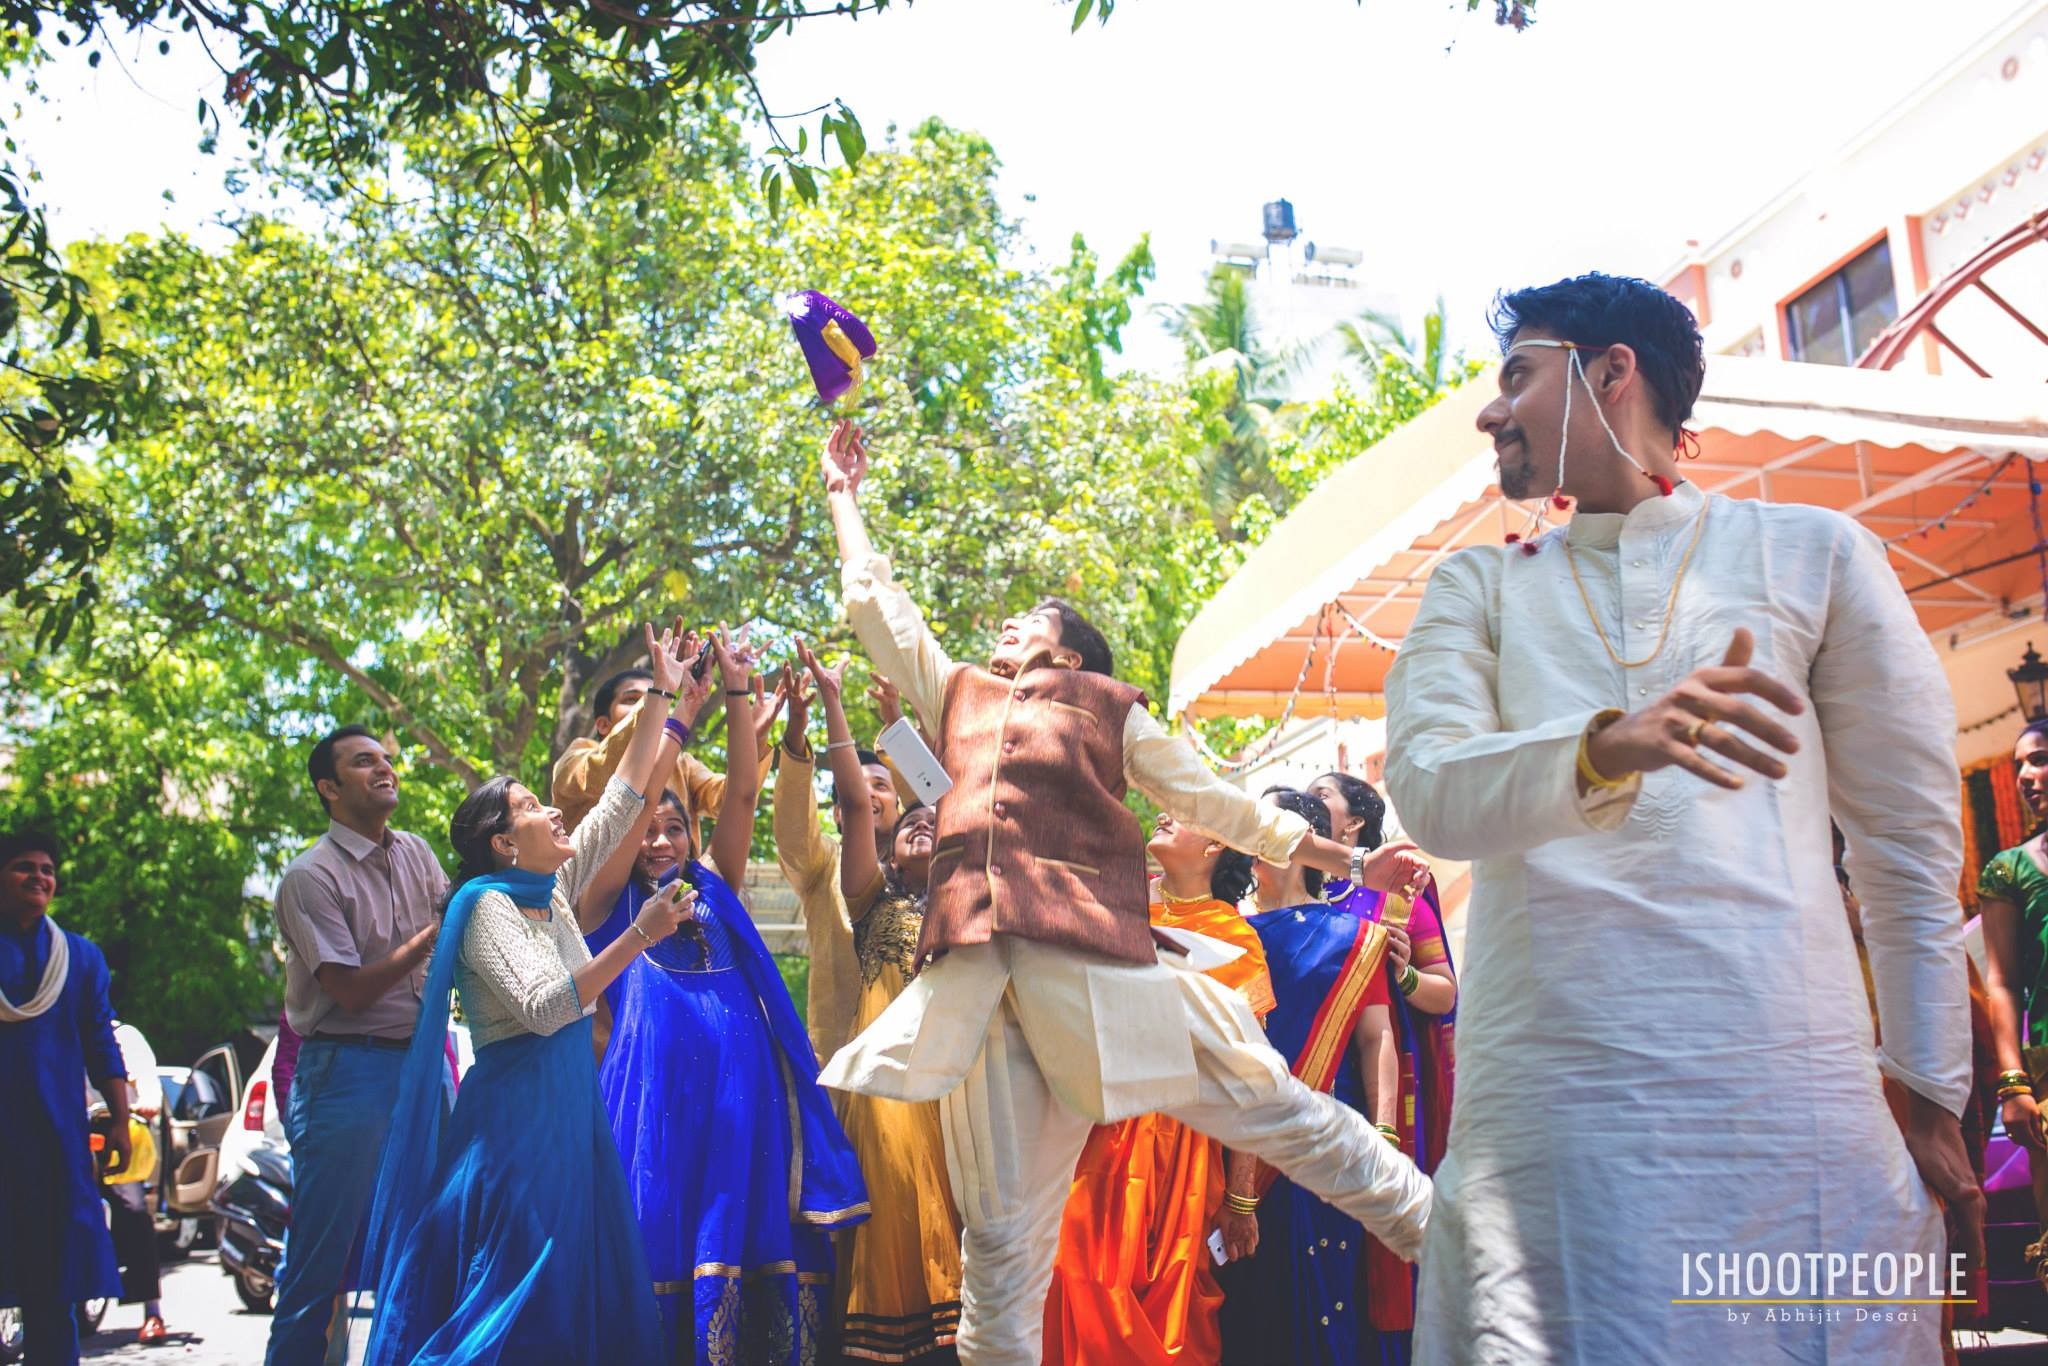 Ishootpeople Wedding Photographer, Mumbai